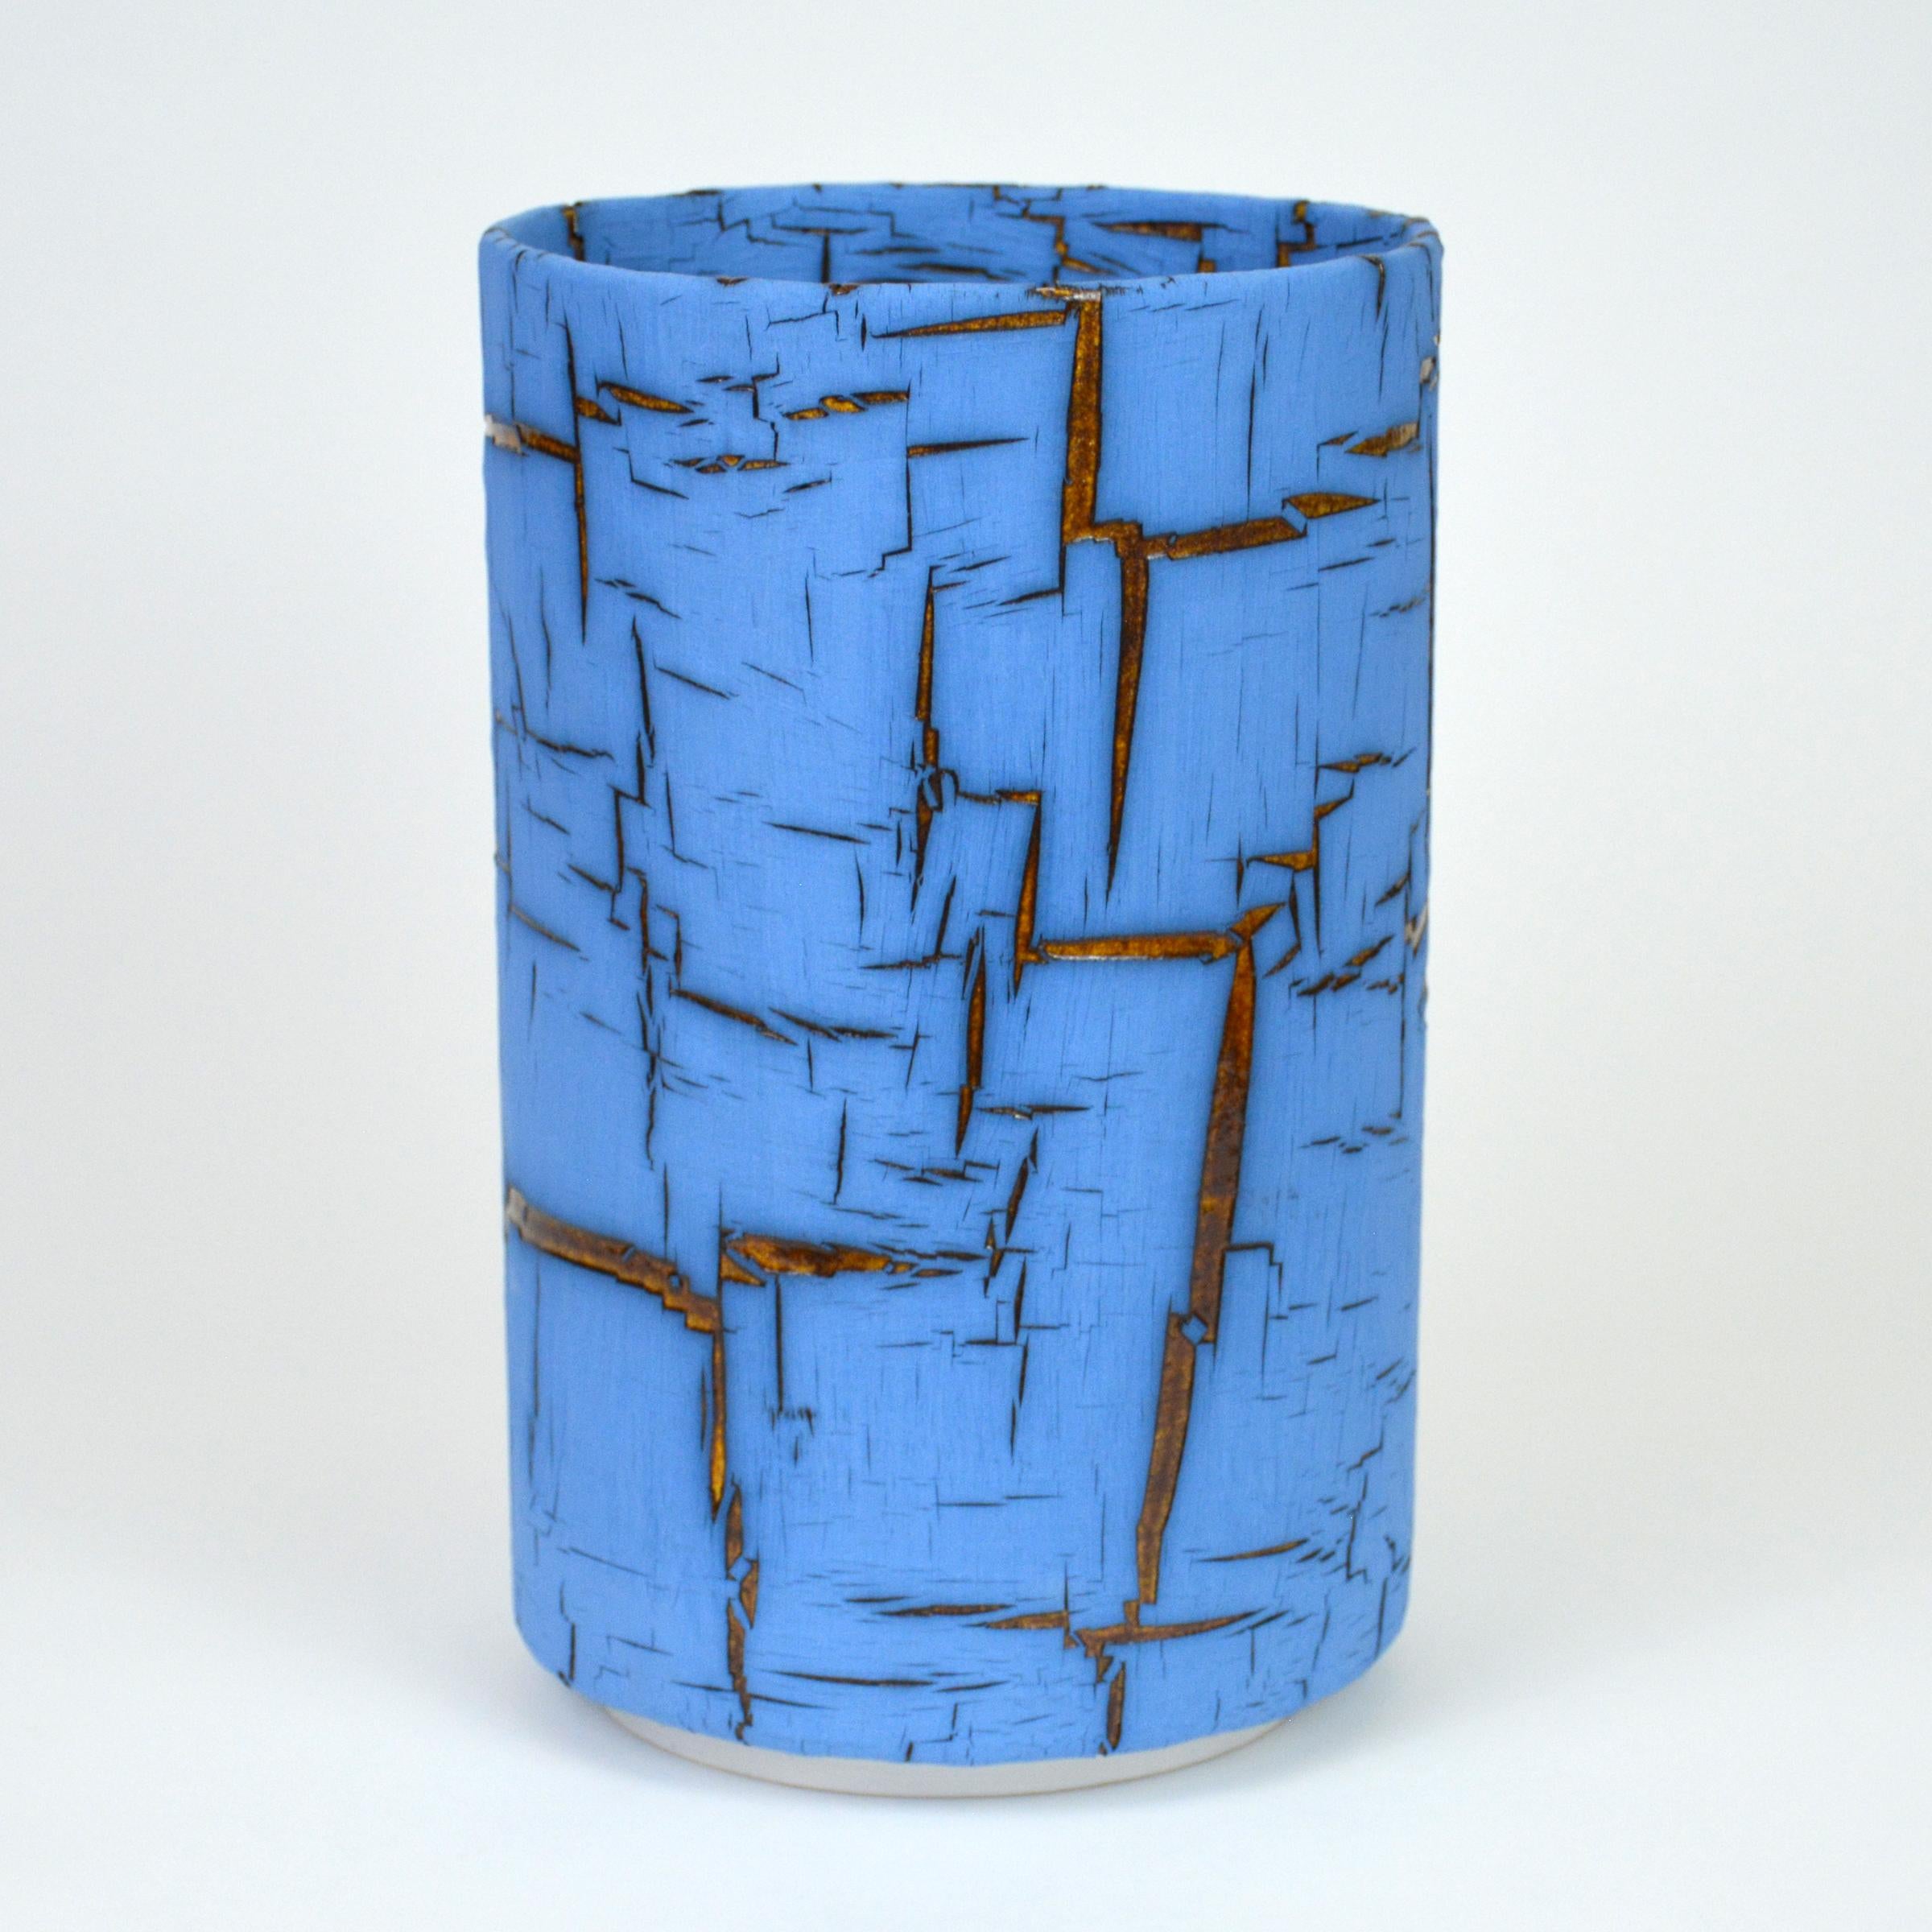 Glazed Ceramic Vessel  Cylinder Sculpture  by William Edwards  For Sale